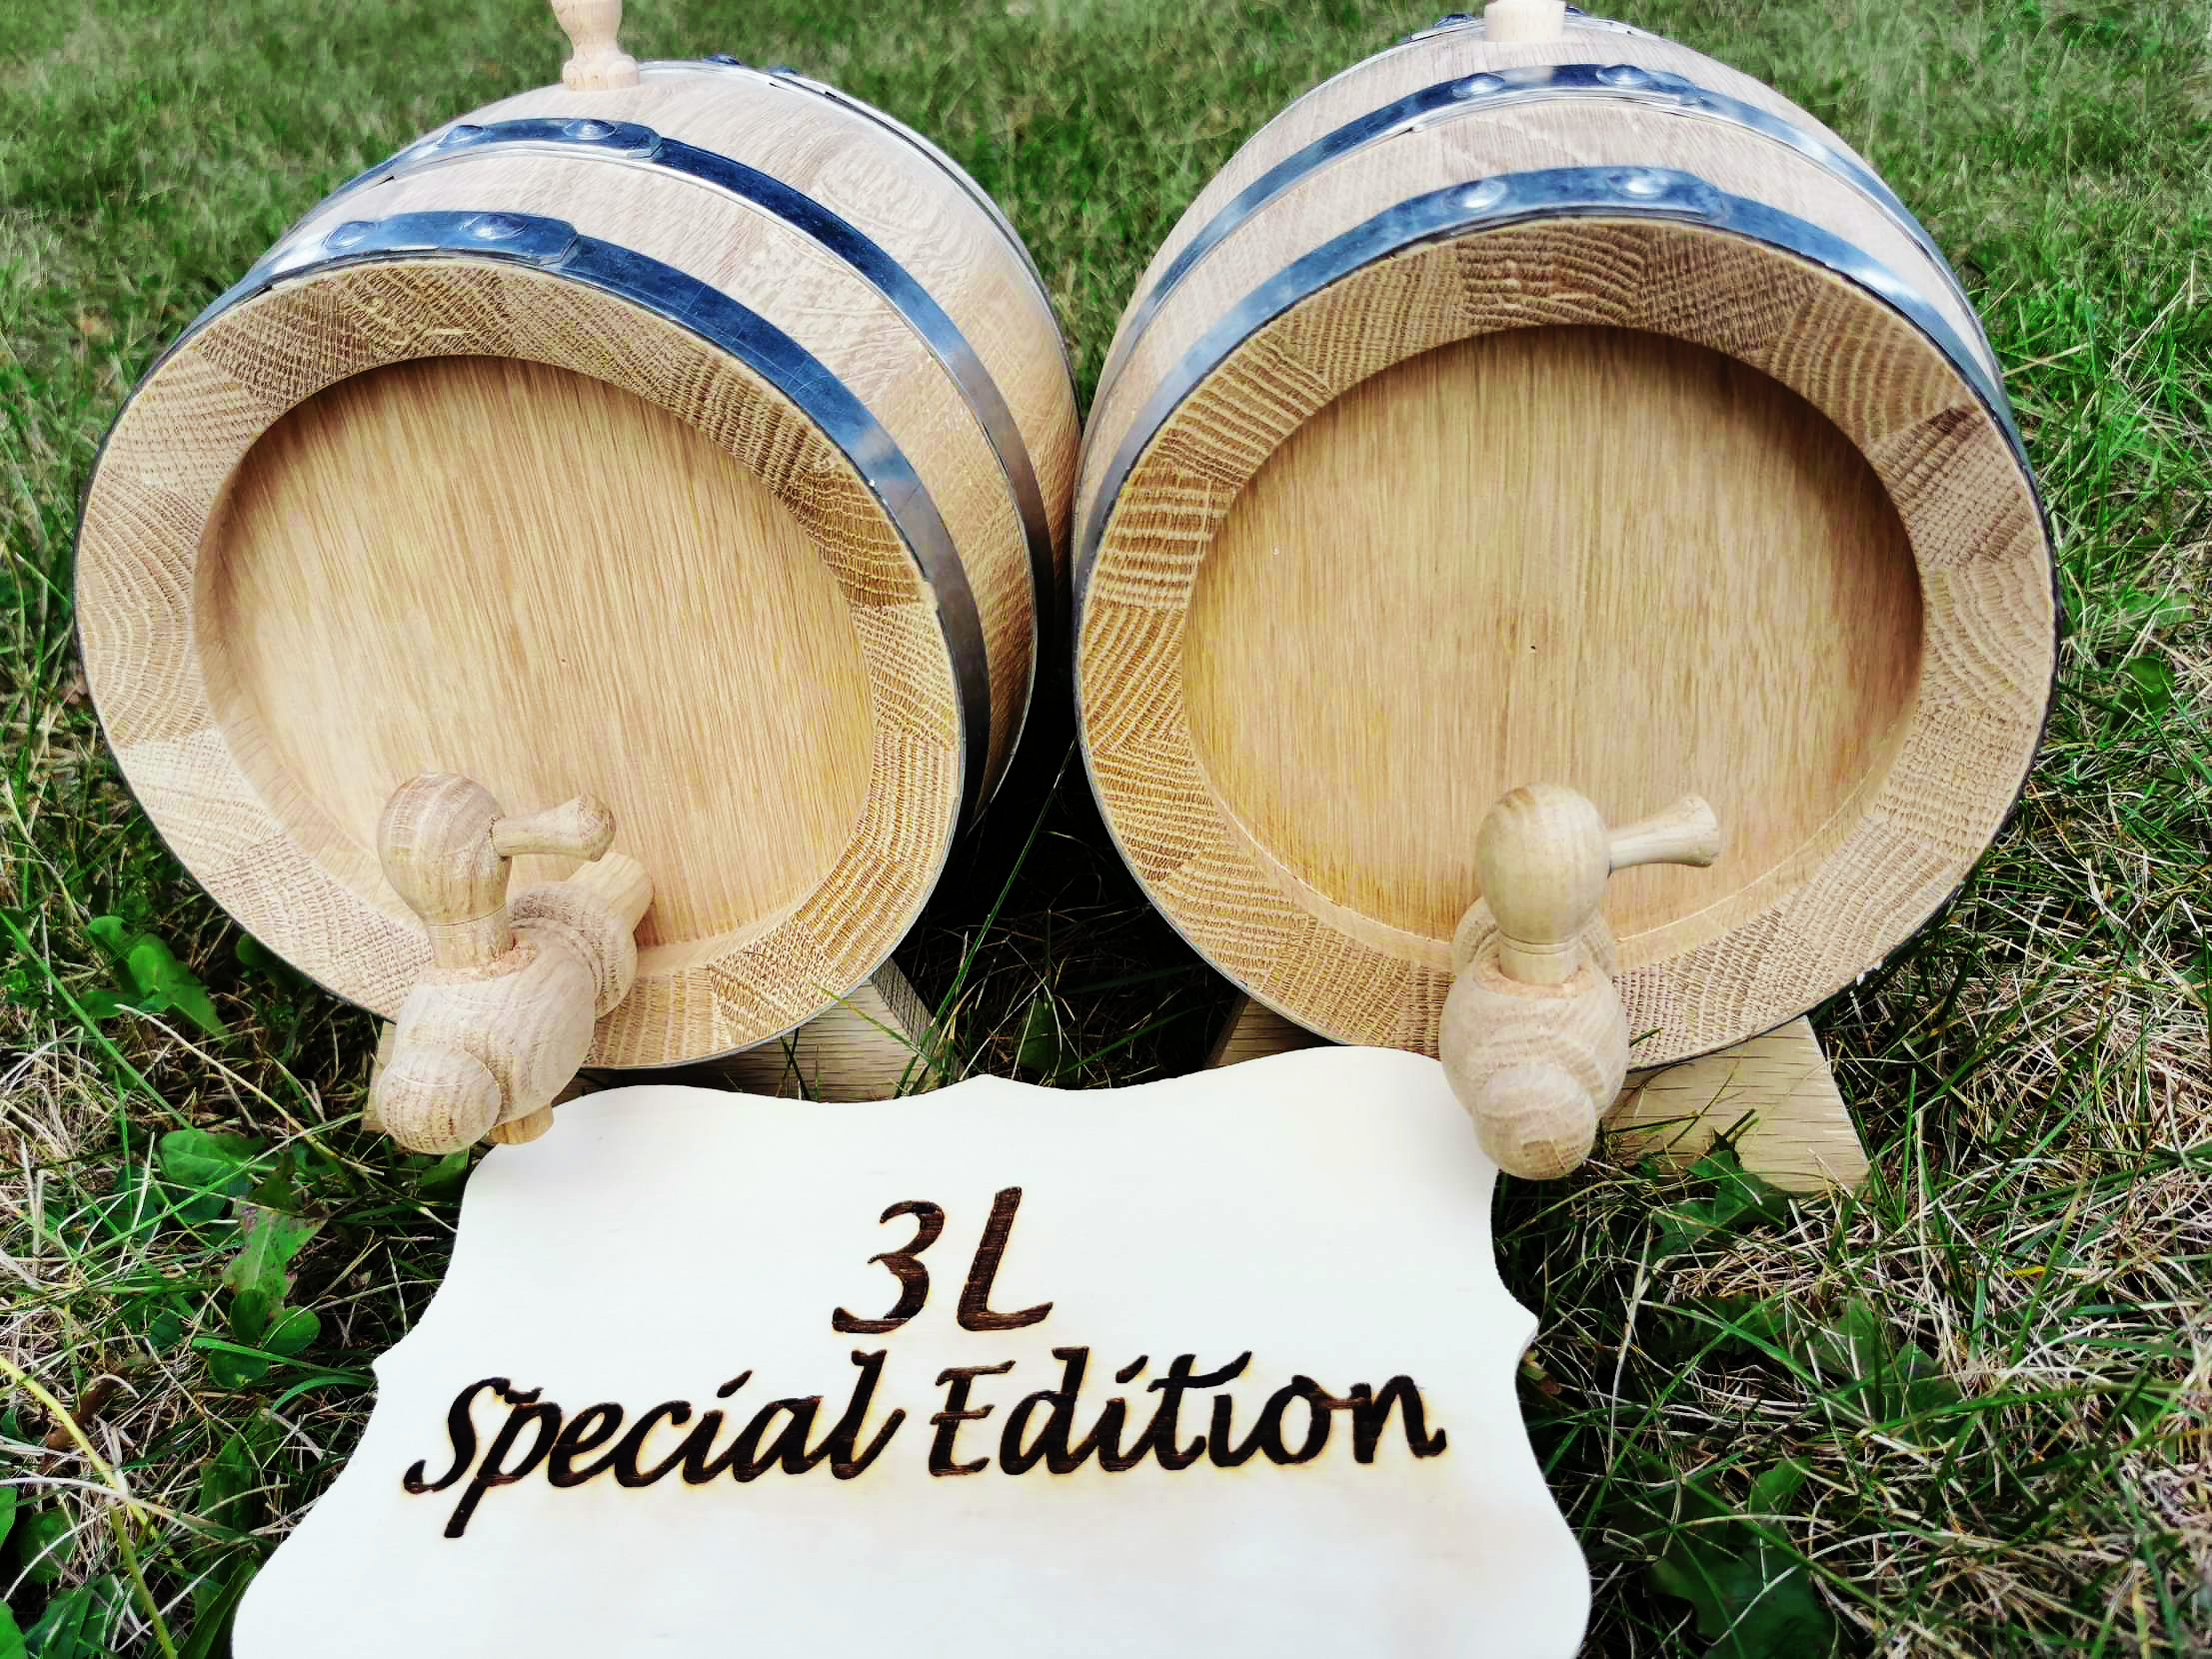 oak barrels special edition 3 l